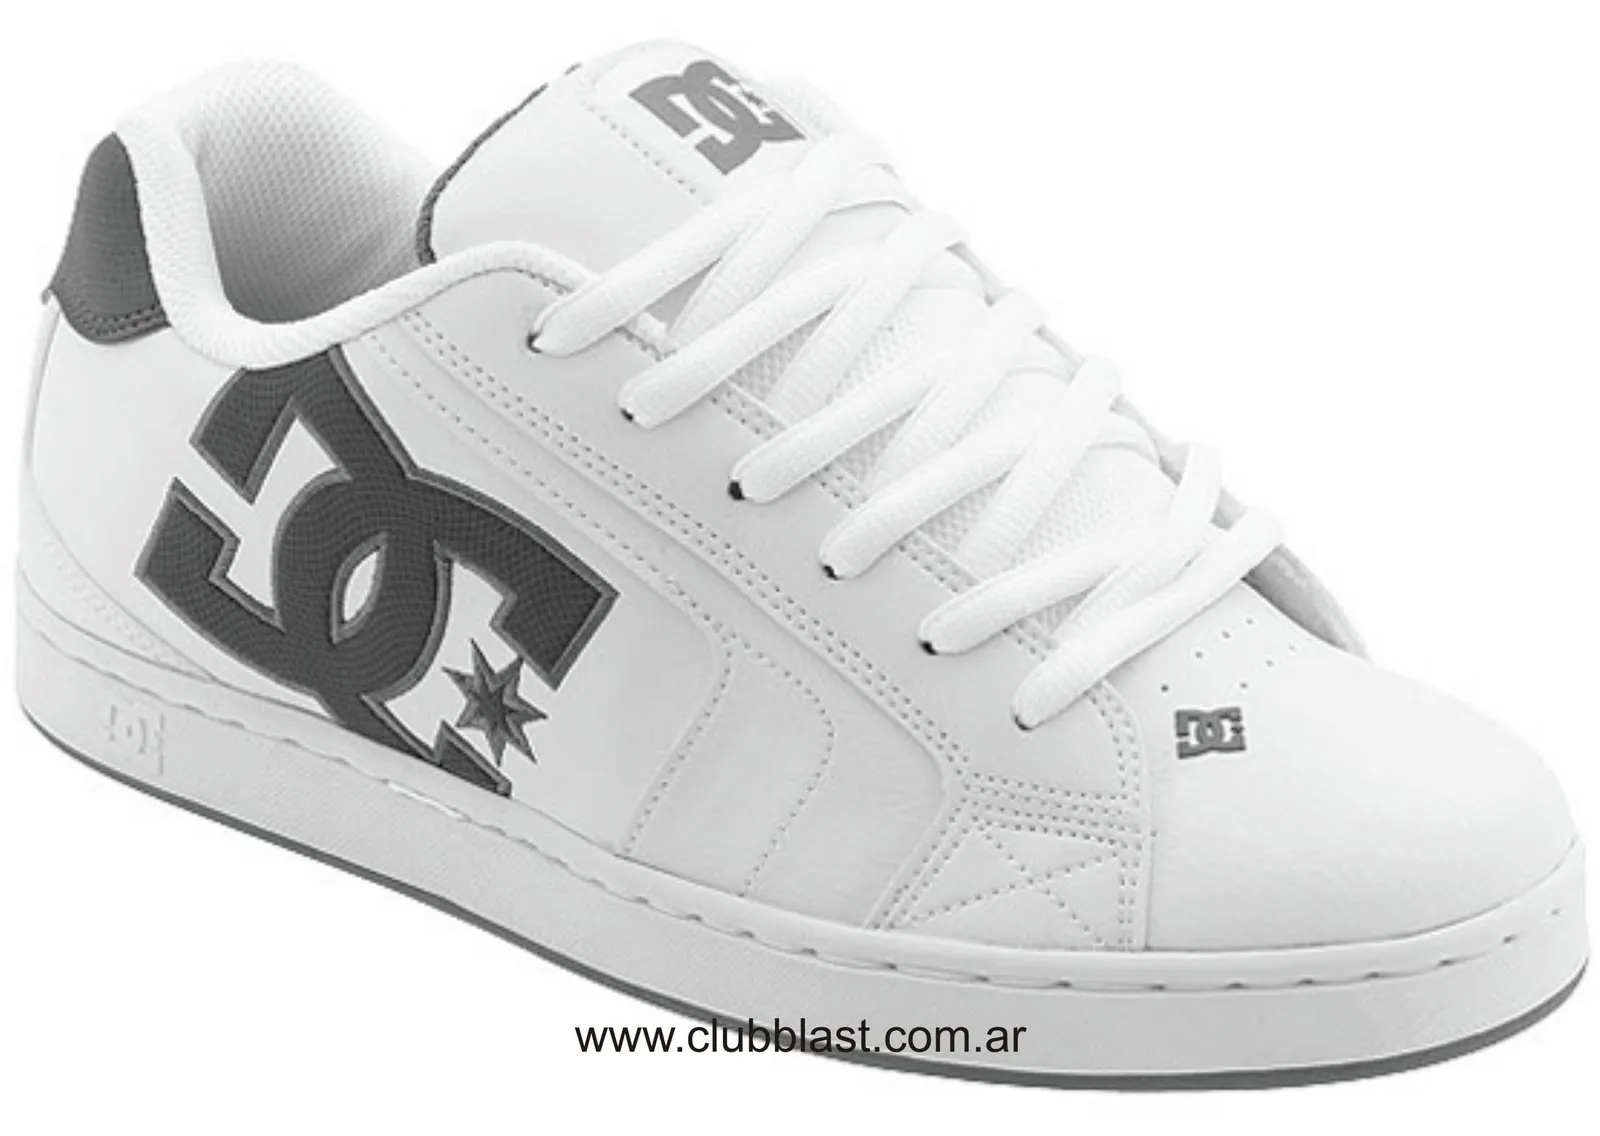 Tenis marca DC Shoes